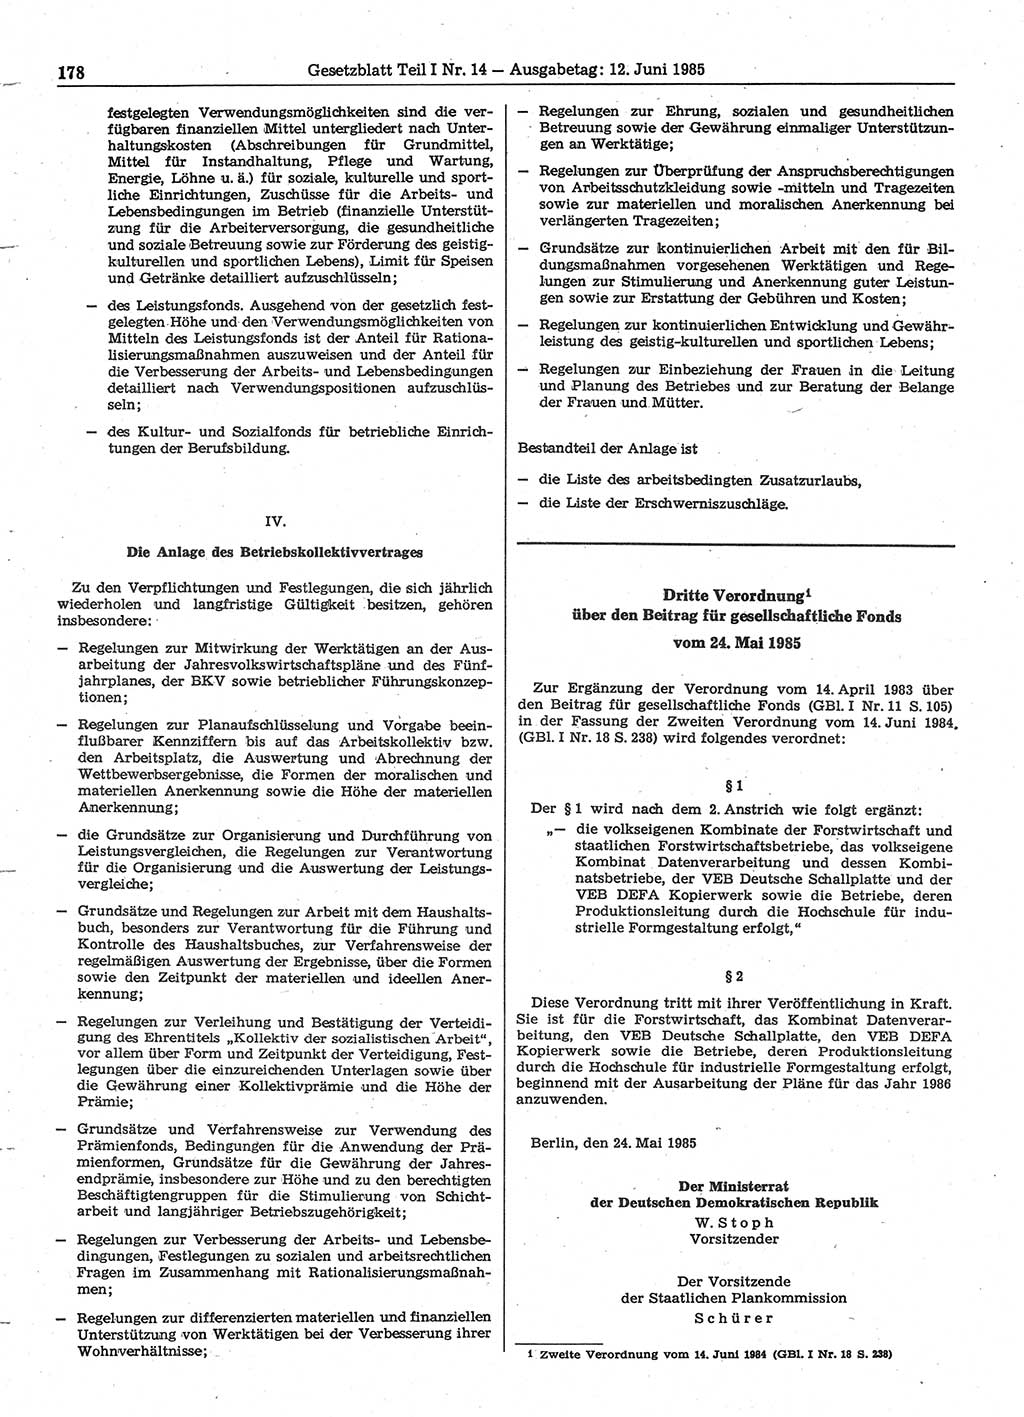 Gesetzblatt (GBl.) der Deutschen Demokratischen Republik (DDR) Teil Ⅰ 1985, Seite 178 (GBl. DDR Ⅰ 1985, S. 178)